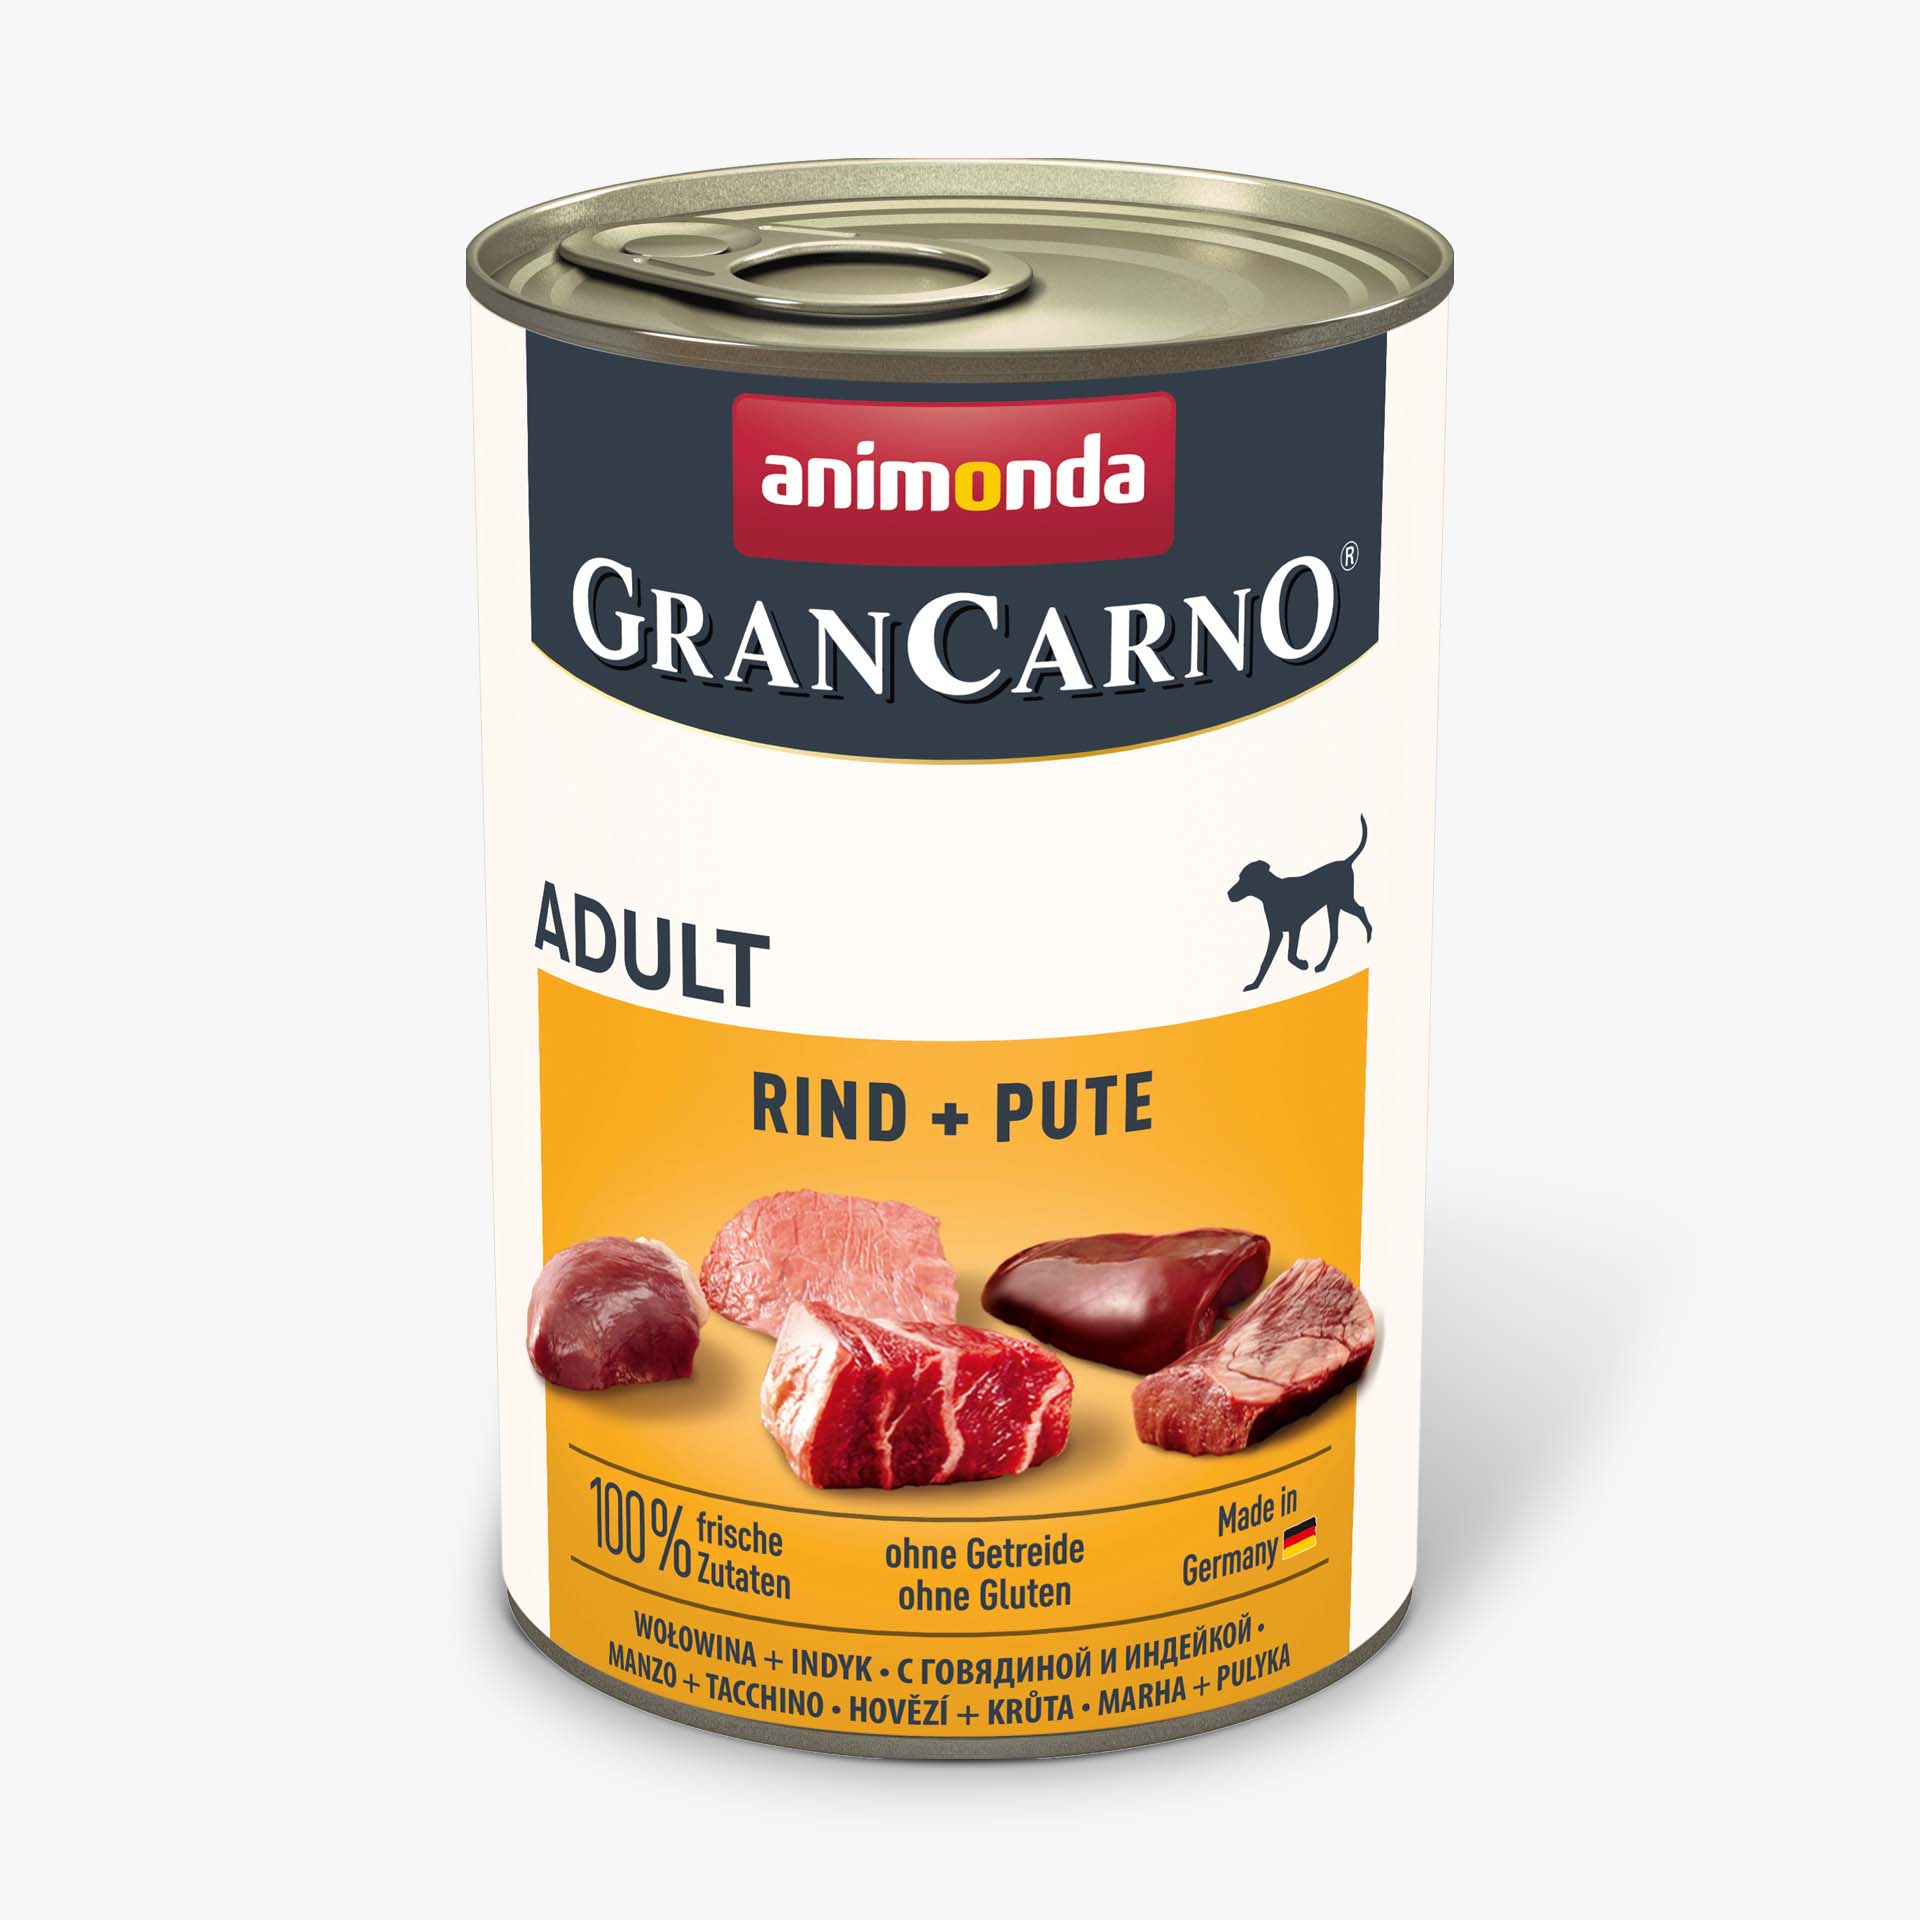 Animonda Grancarno Adult Plus hovězí + krůta 400g